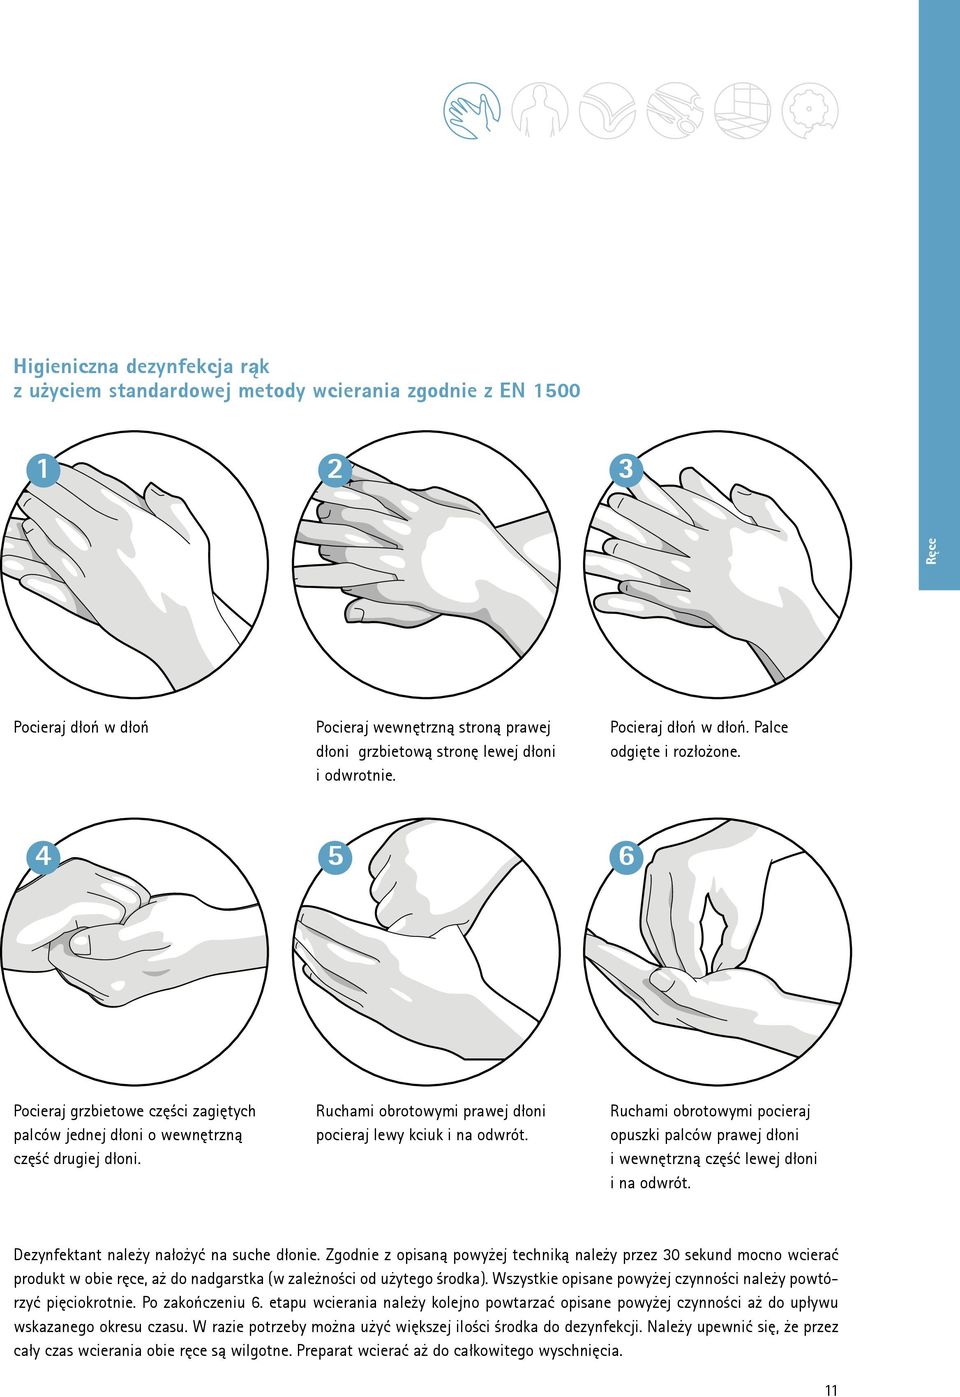 Ruchami obrotowymi prawej dłoni pocieraj lewy kciuk i na odwrót. Ruchami obrotowymi pocieraj opuszki palców prawej dłoni i wewnętrzną część lewej dłoni i na odwrót.